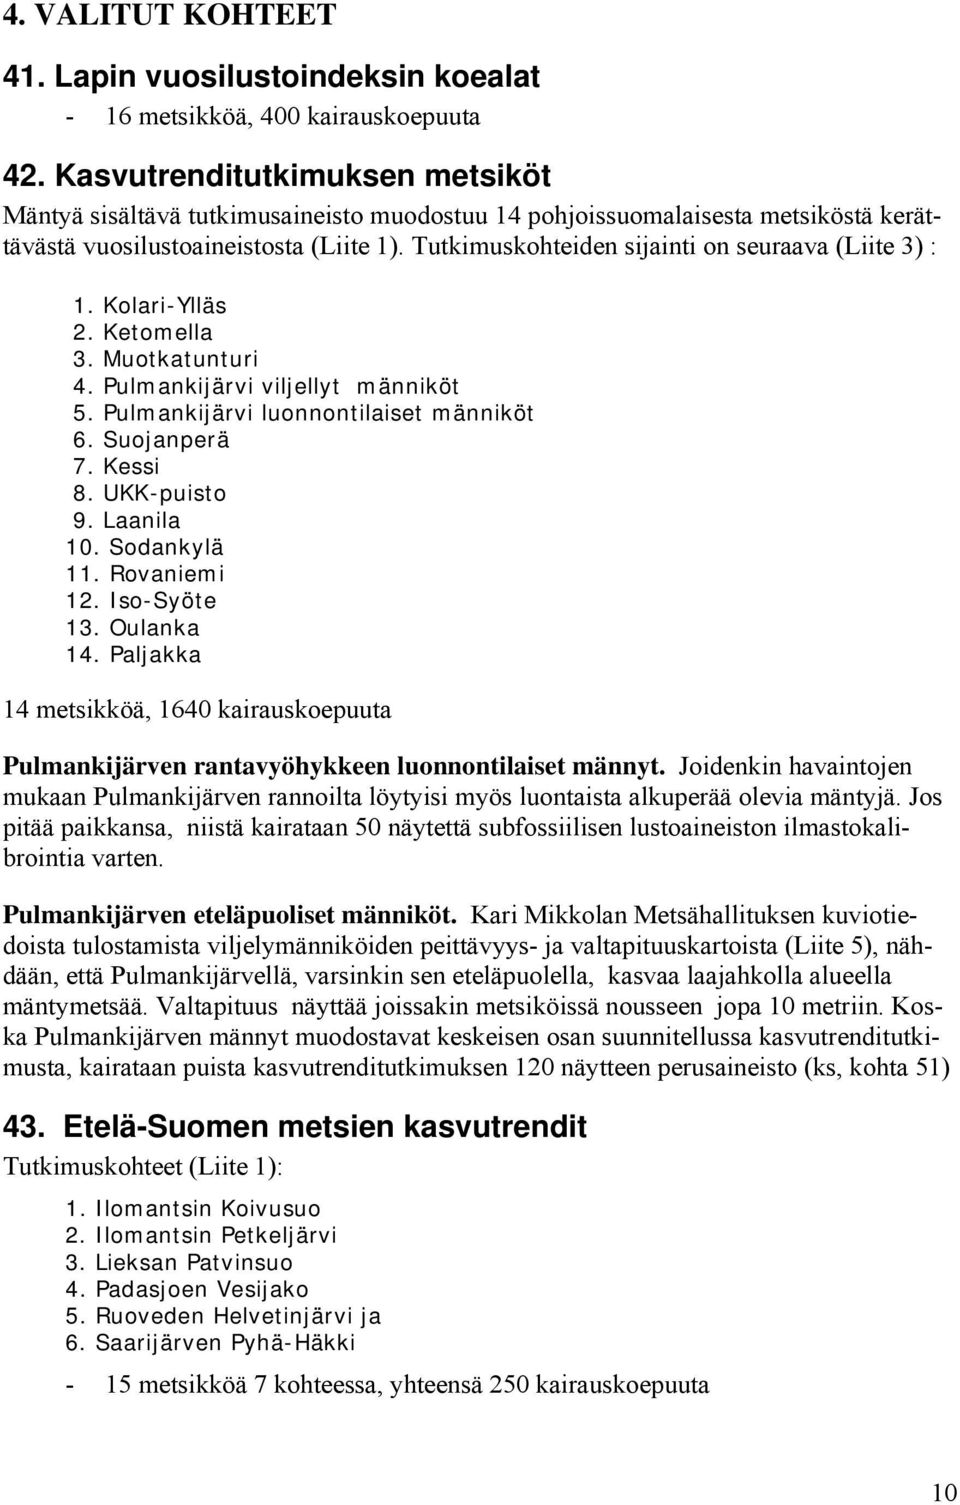 Tutkimuskohteiden sijainti on seuraava (Liite 3) : 1. Kolari-Ylläs 2. Ketomella 3. Muotkatunturi 4. Pulmankijärvi viljellyt männiköt 5. Pulmankijärvi luonnontilaiset männiköt 6. Suojanperä 7. Kessi 8.